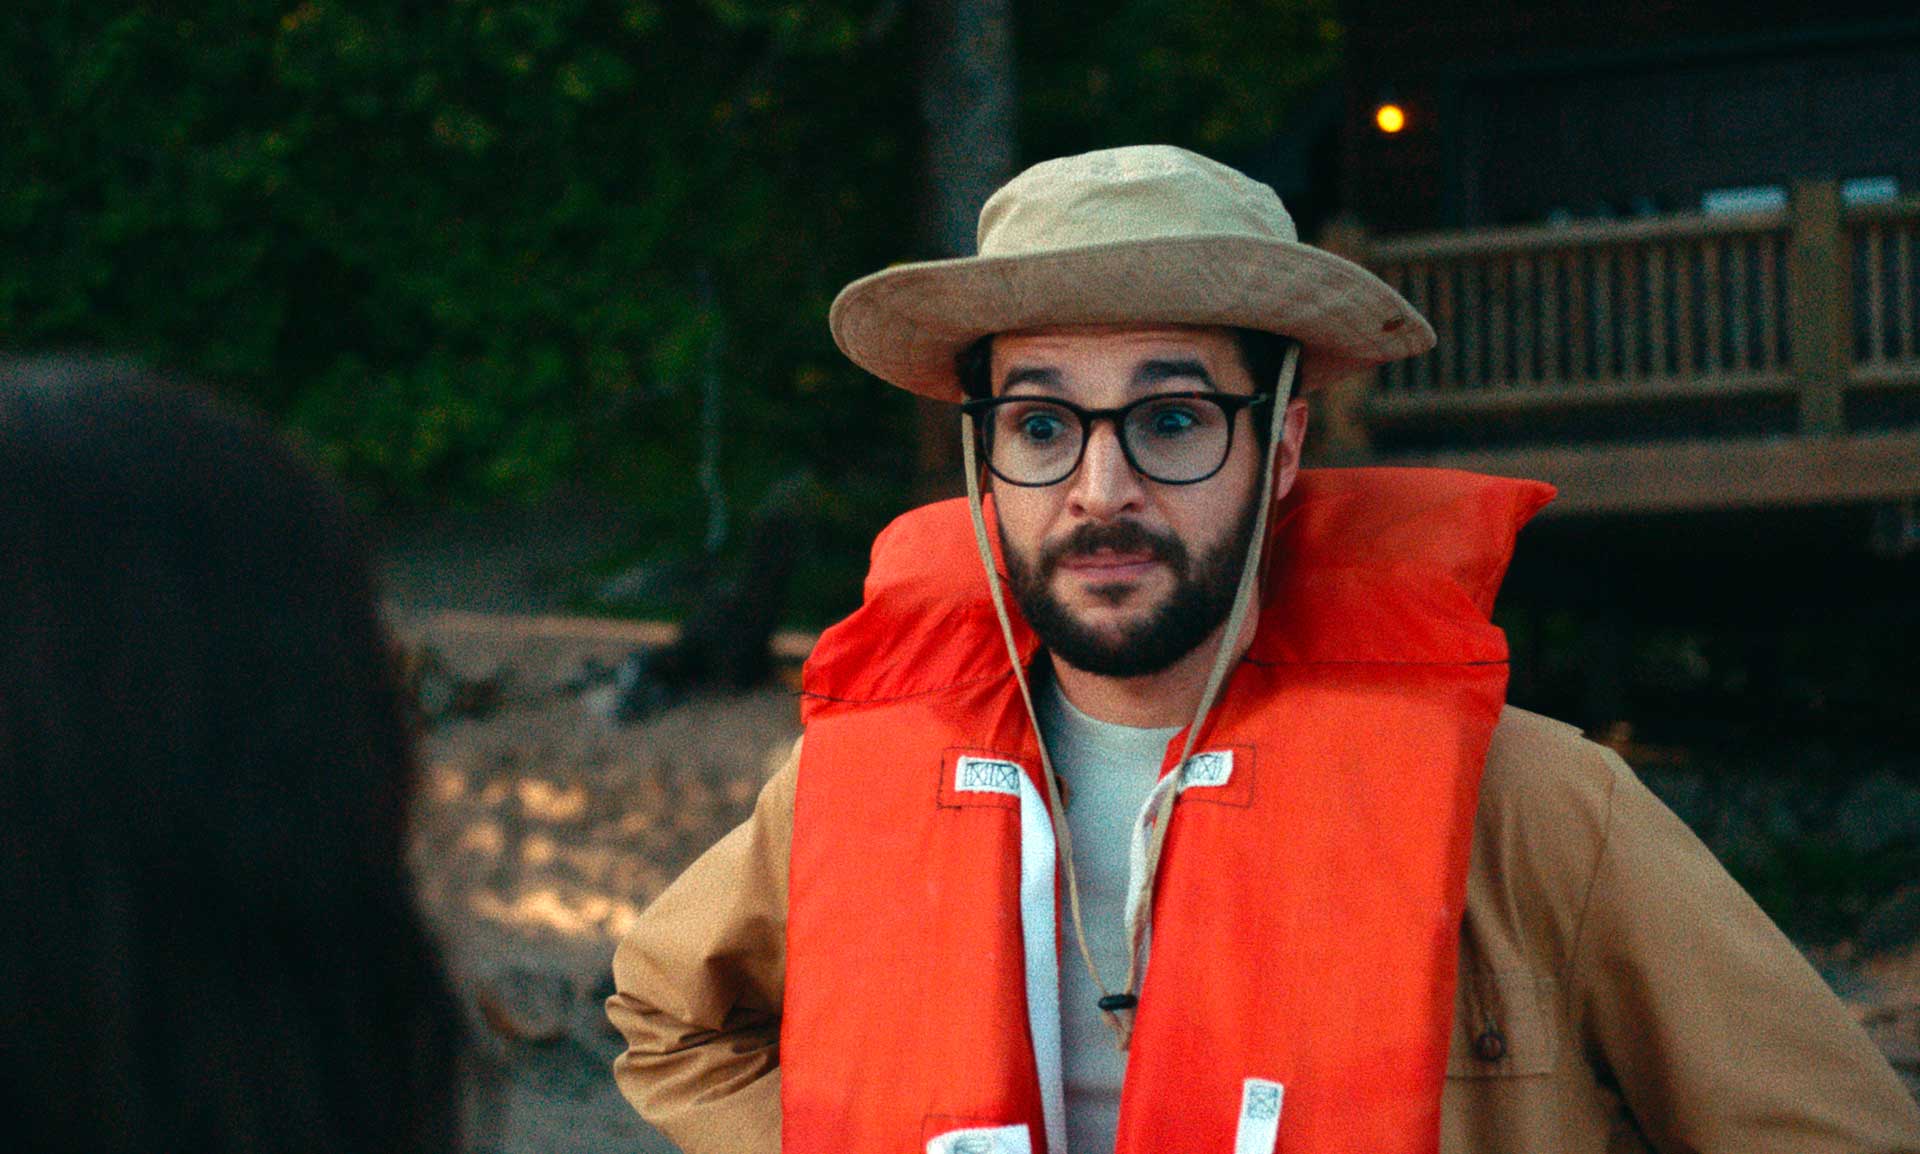 مرد جدی با قیافه مسخره، عینک بزرگ و جلیقه نجات نارنجی رنگ در فضای جنگلی کنار دریاچه فیلم Black Bear